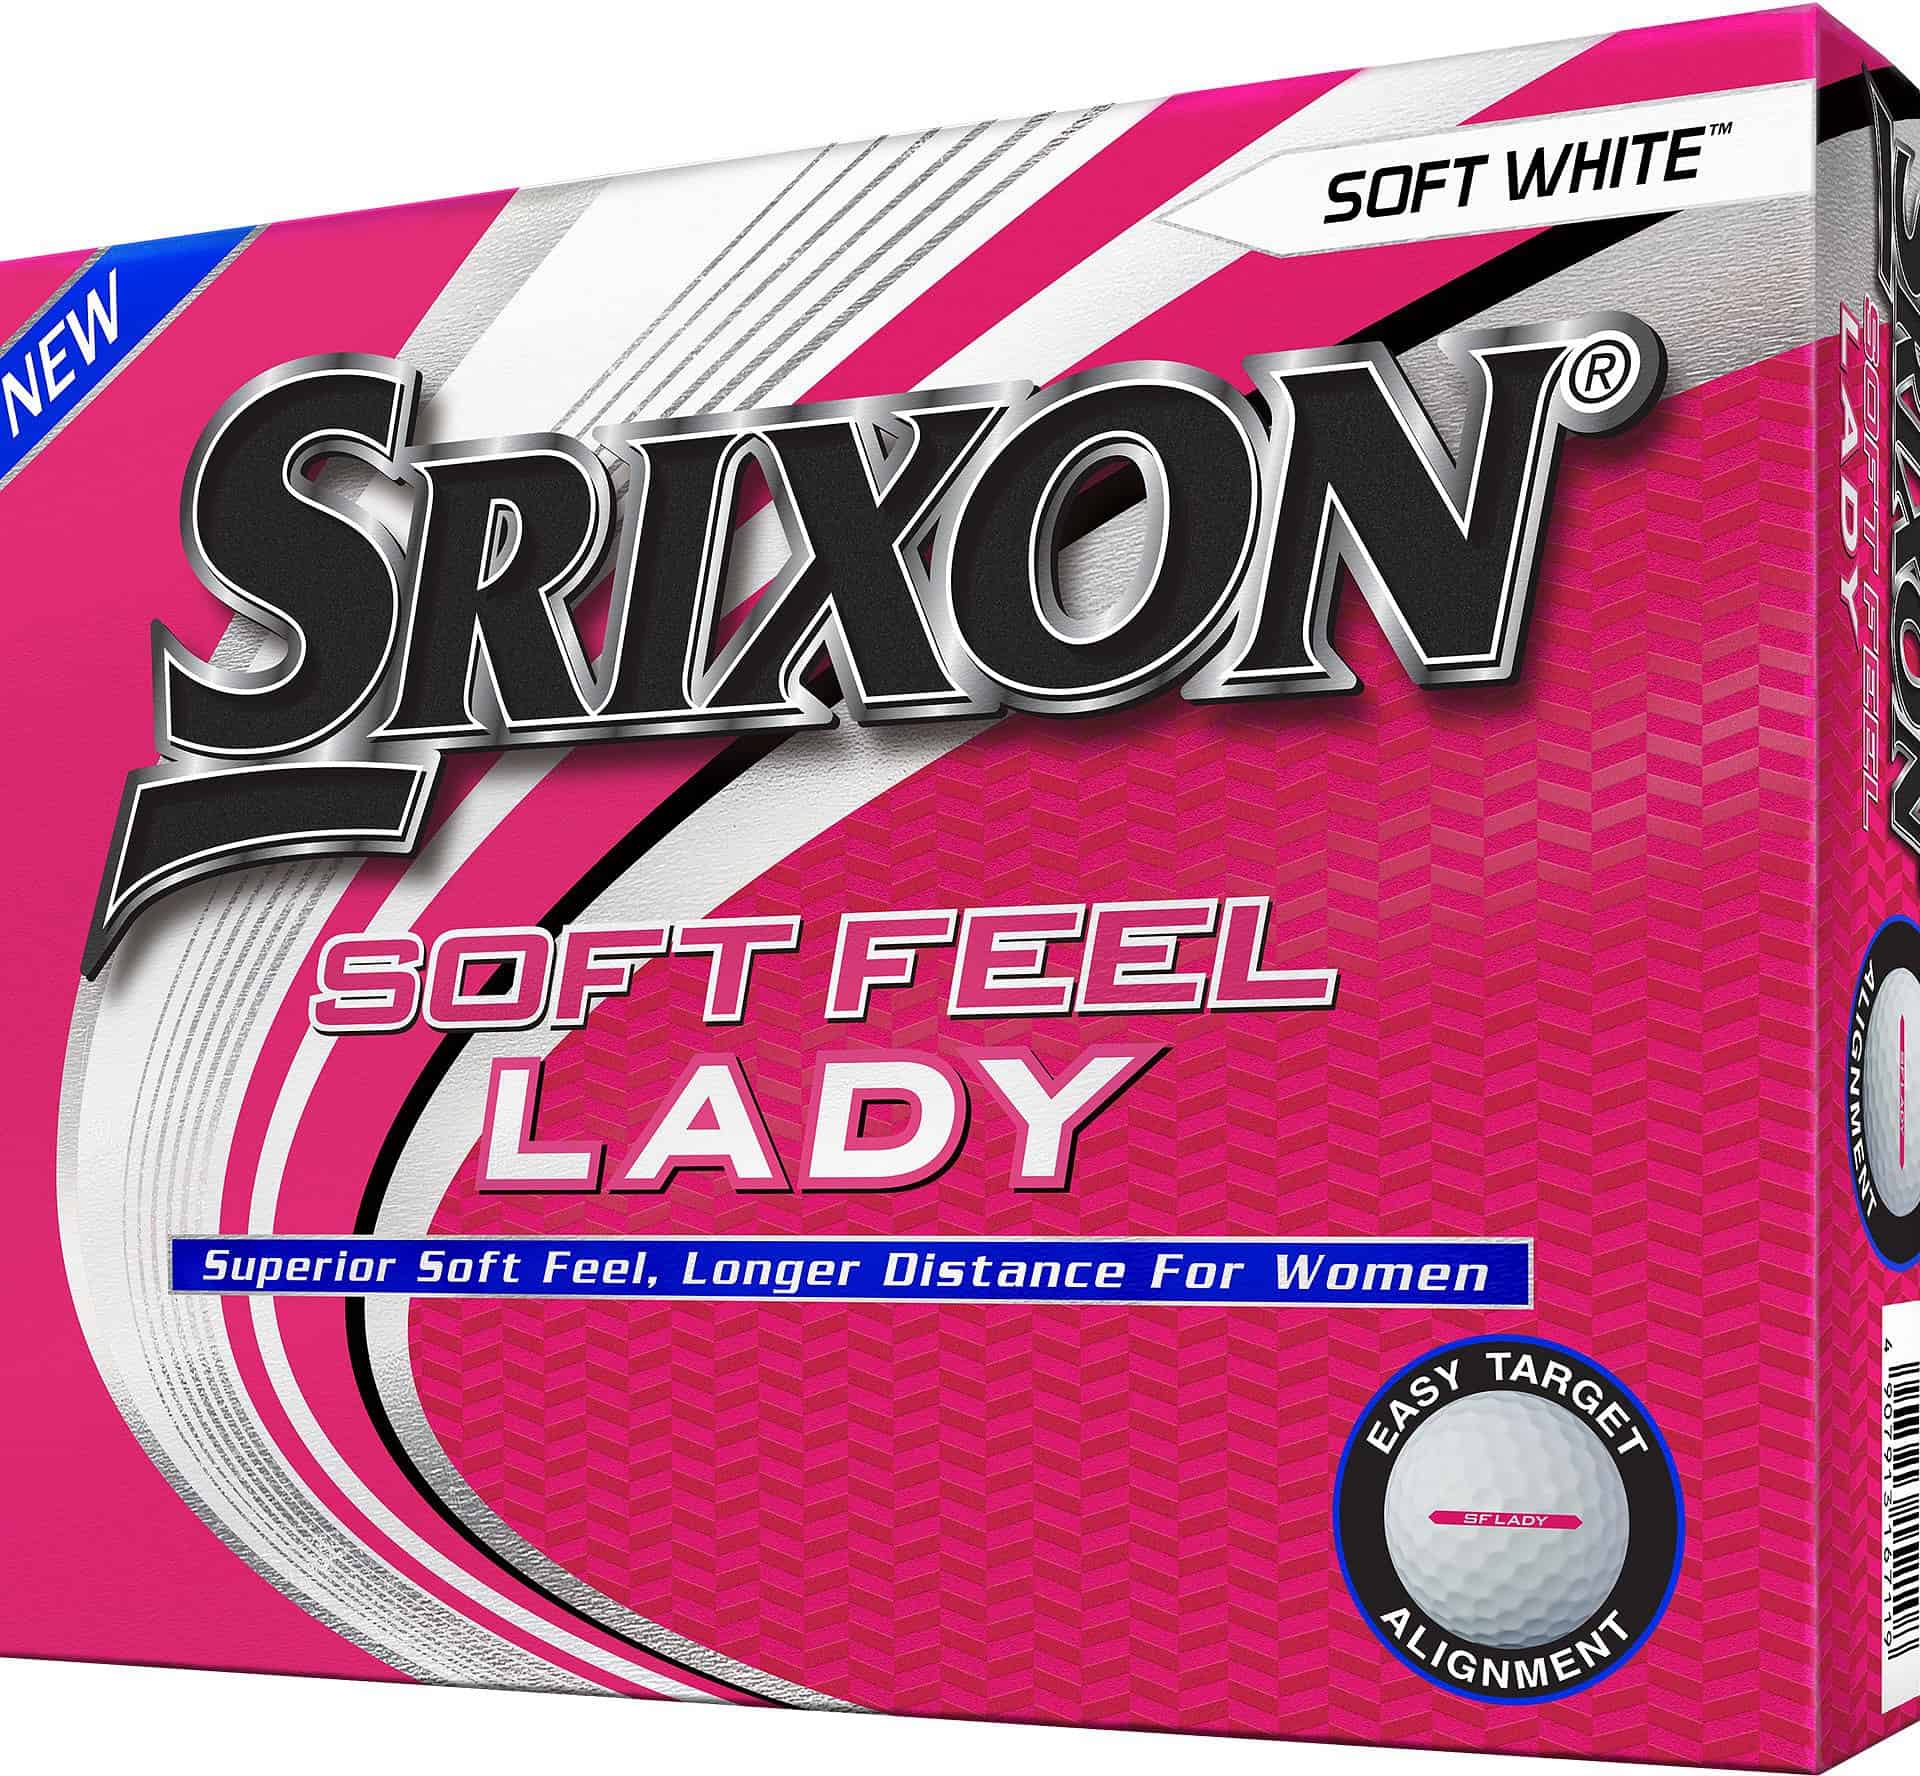 Srixon Soft Feel Lady Golf Balls - 12 Pack, Women's